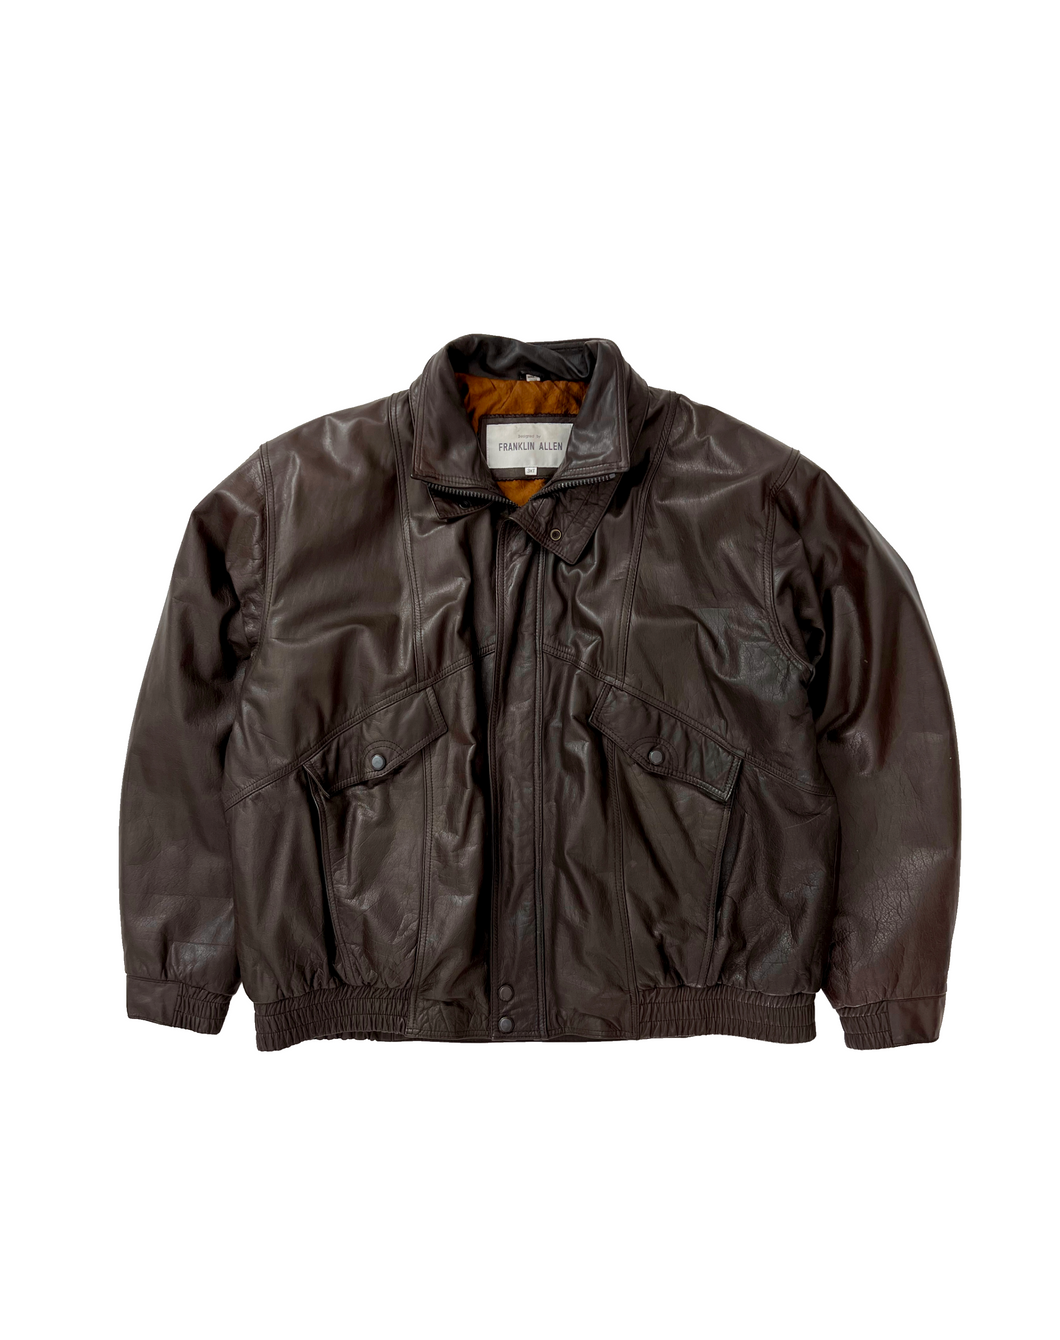 Vintage Satin Lined Brown Leather Jacket